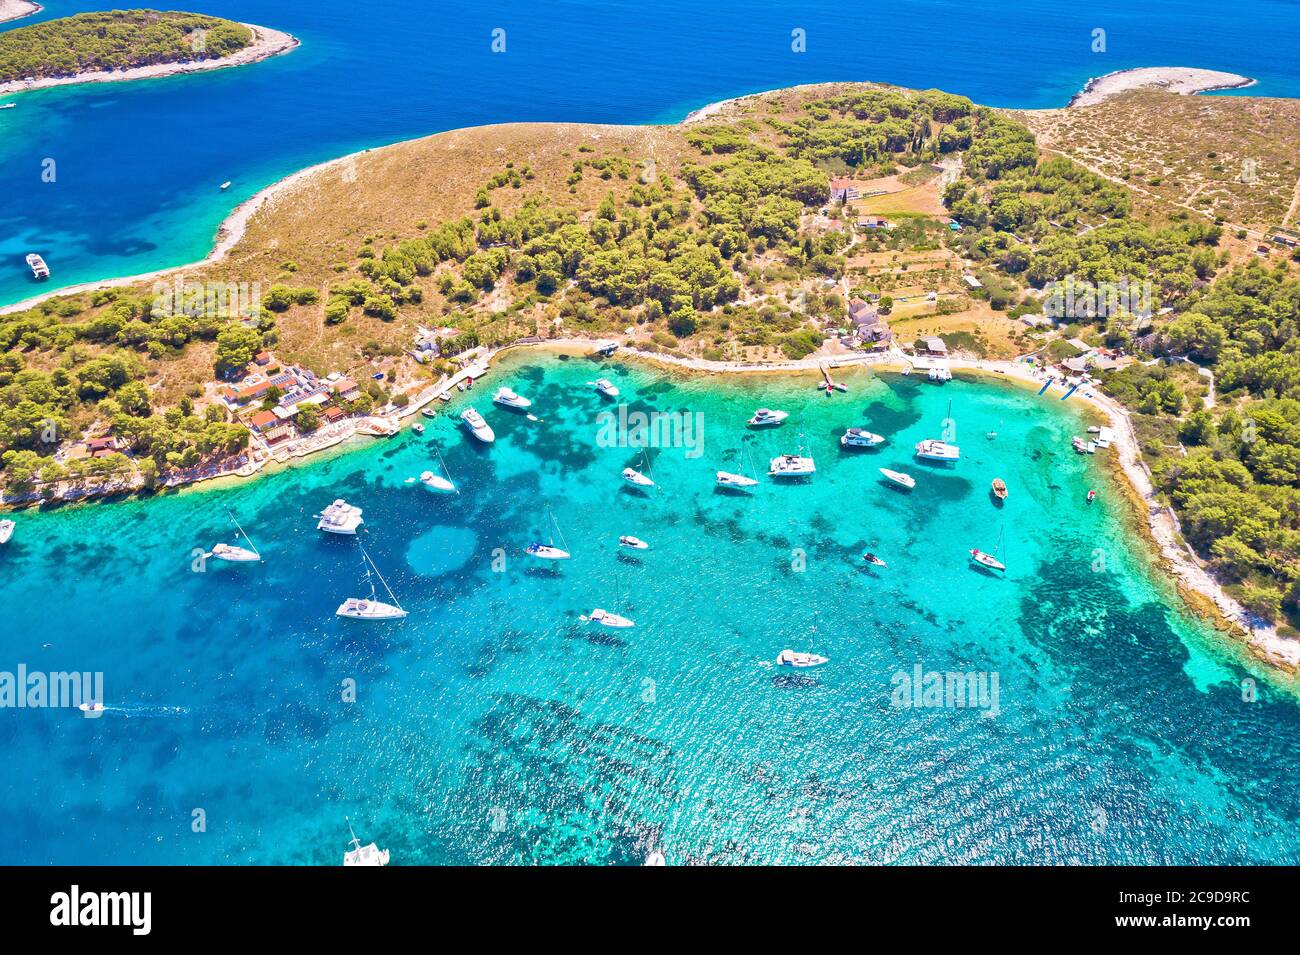 Pakleni otoci Segelziel arcipelago Luftbild, Insel Hvar, Dalmatien Region von Kroatien Stockfoto